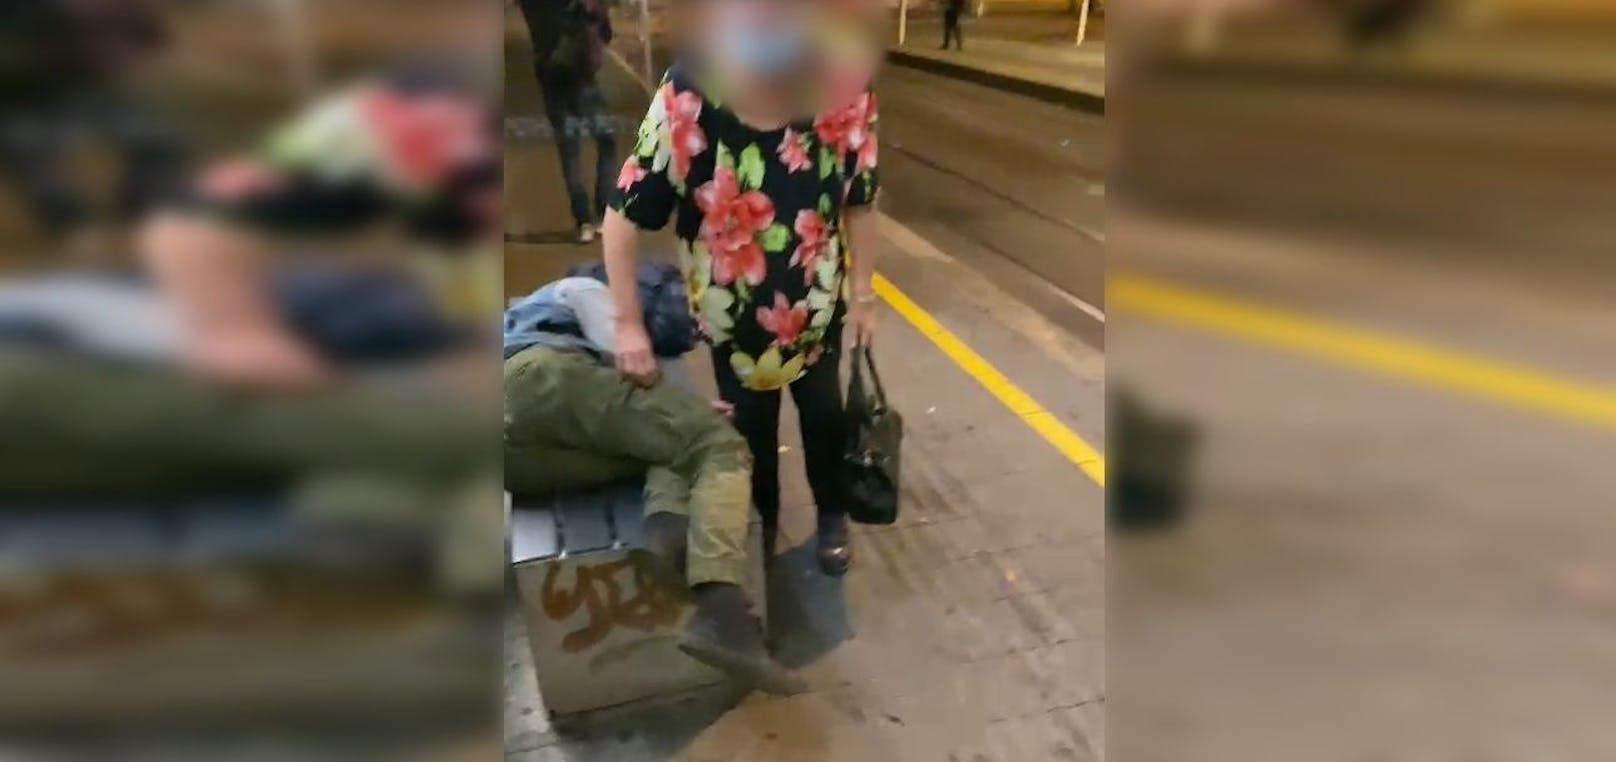 Die Dame durchsuchte die Tasche des schlafenden Mannes.